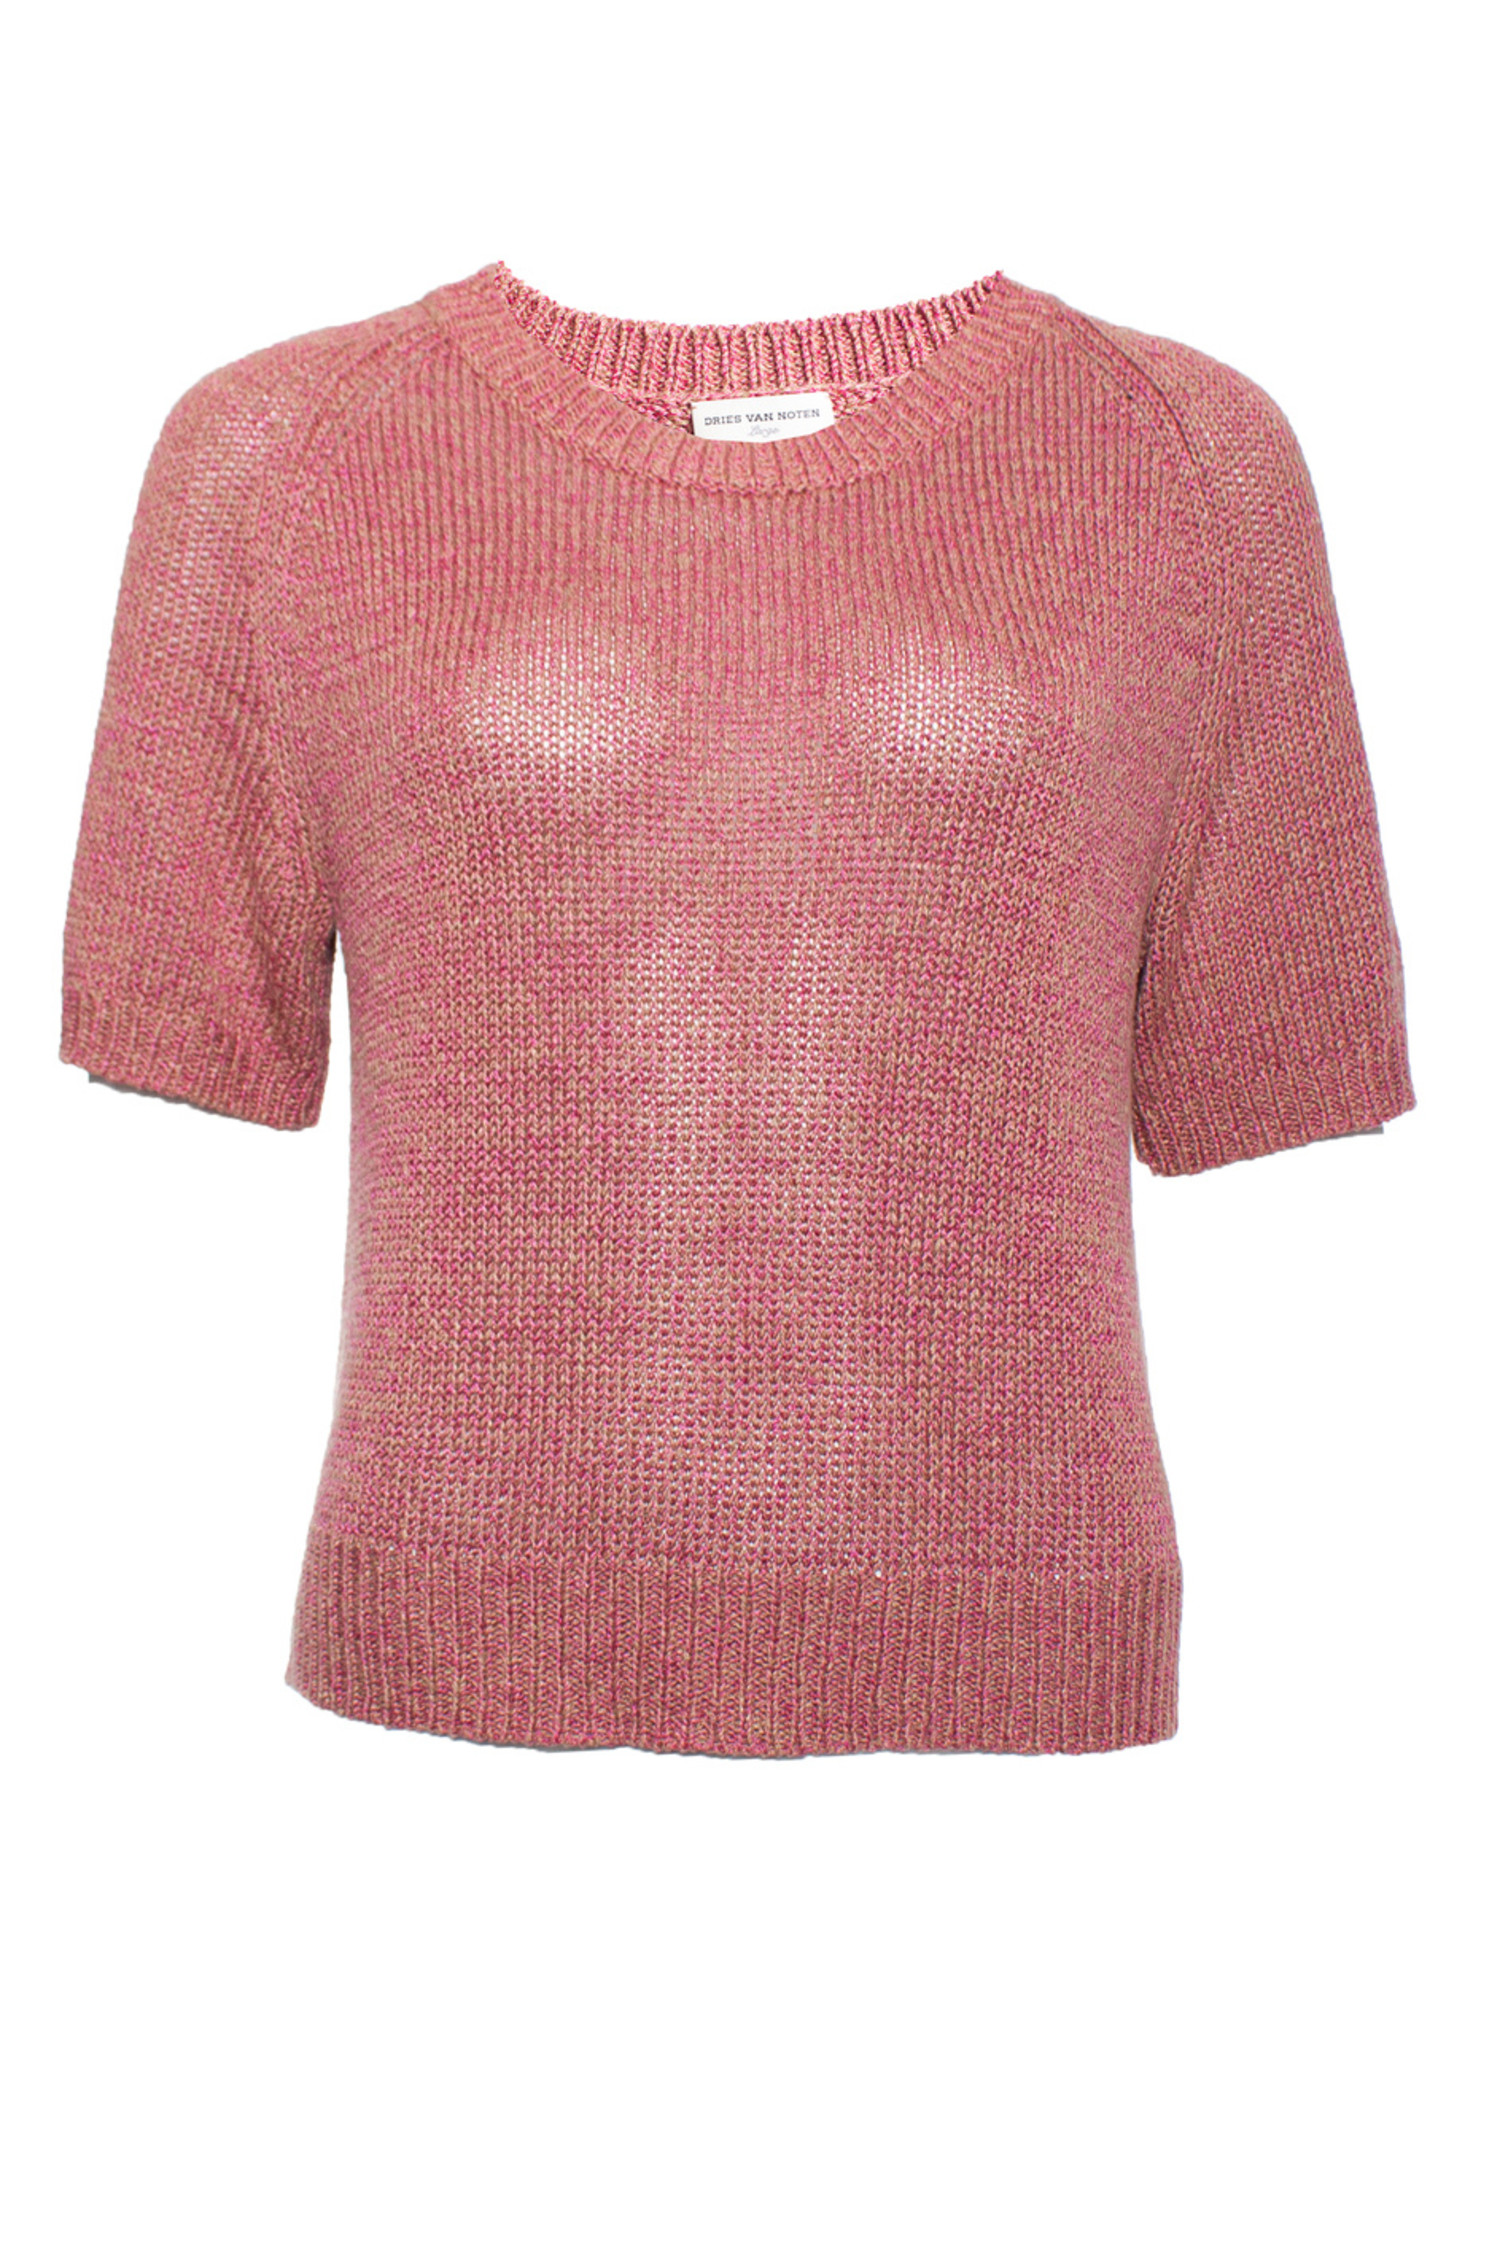 Dries van Noten, Pink knitted top - Unique Designer Pieces